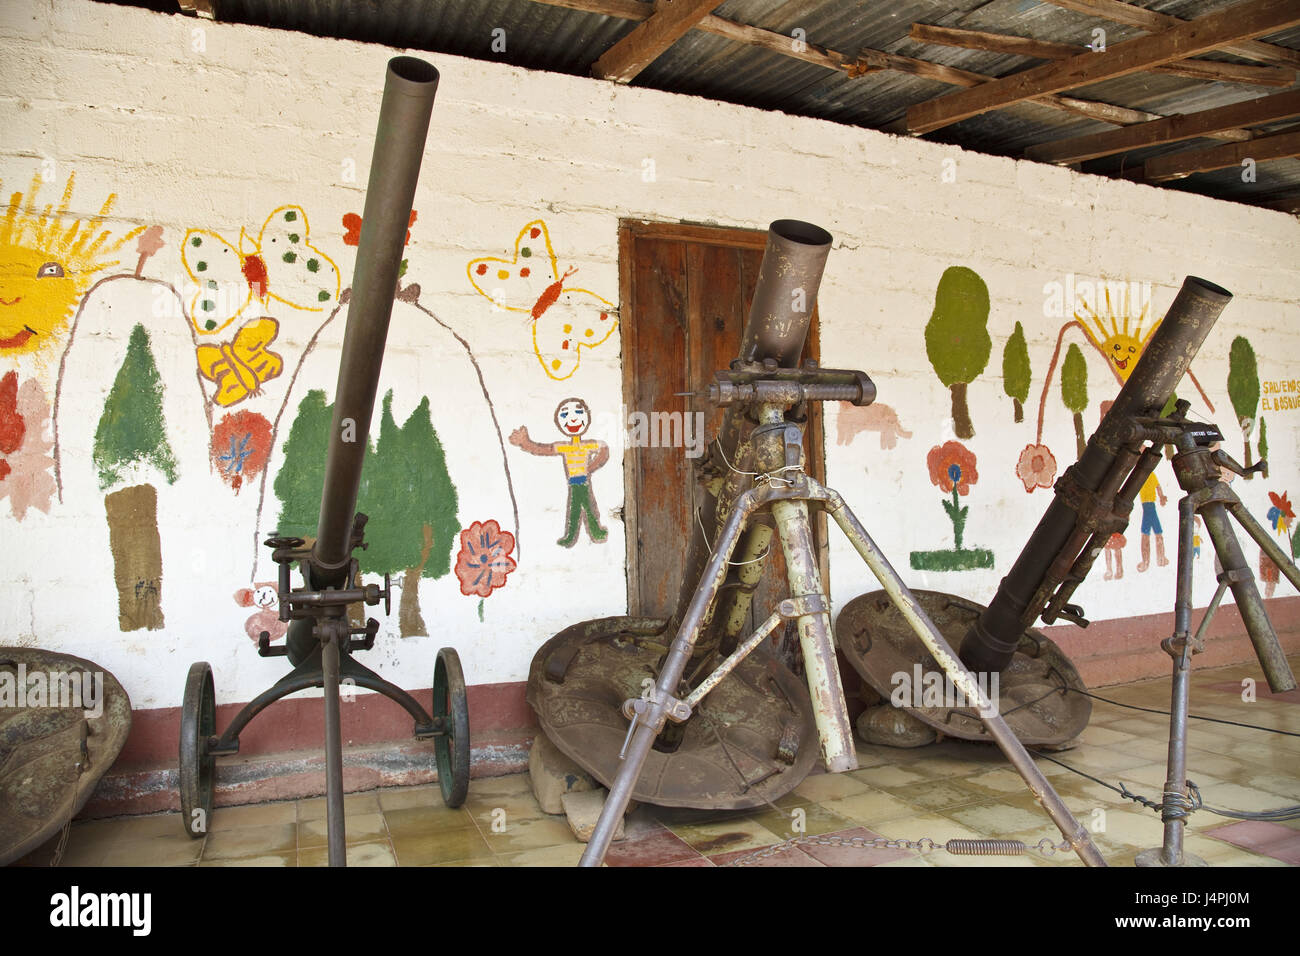 El Salvador, Perquin, revolutionary museum, exhibits, Stock Photo